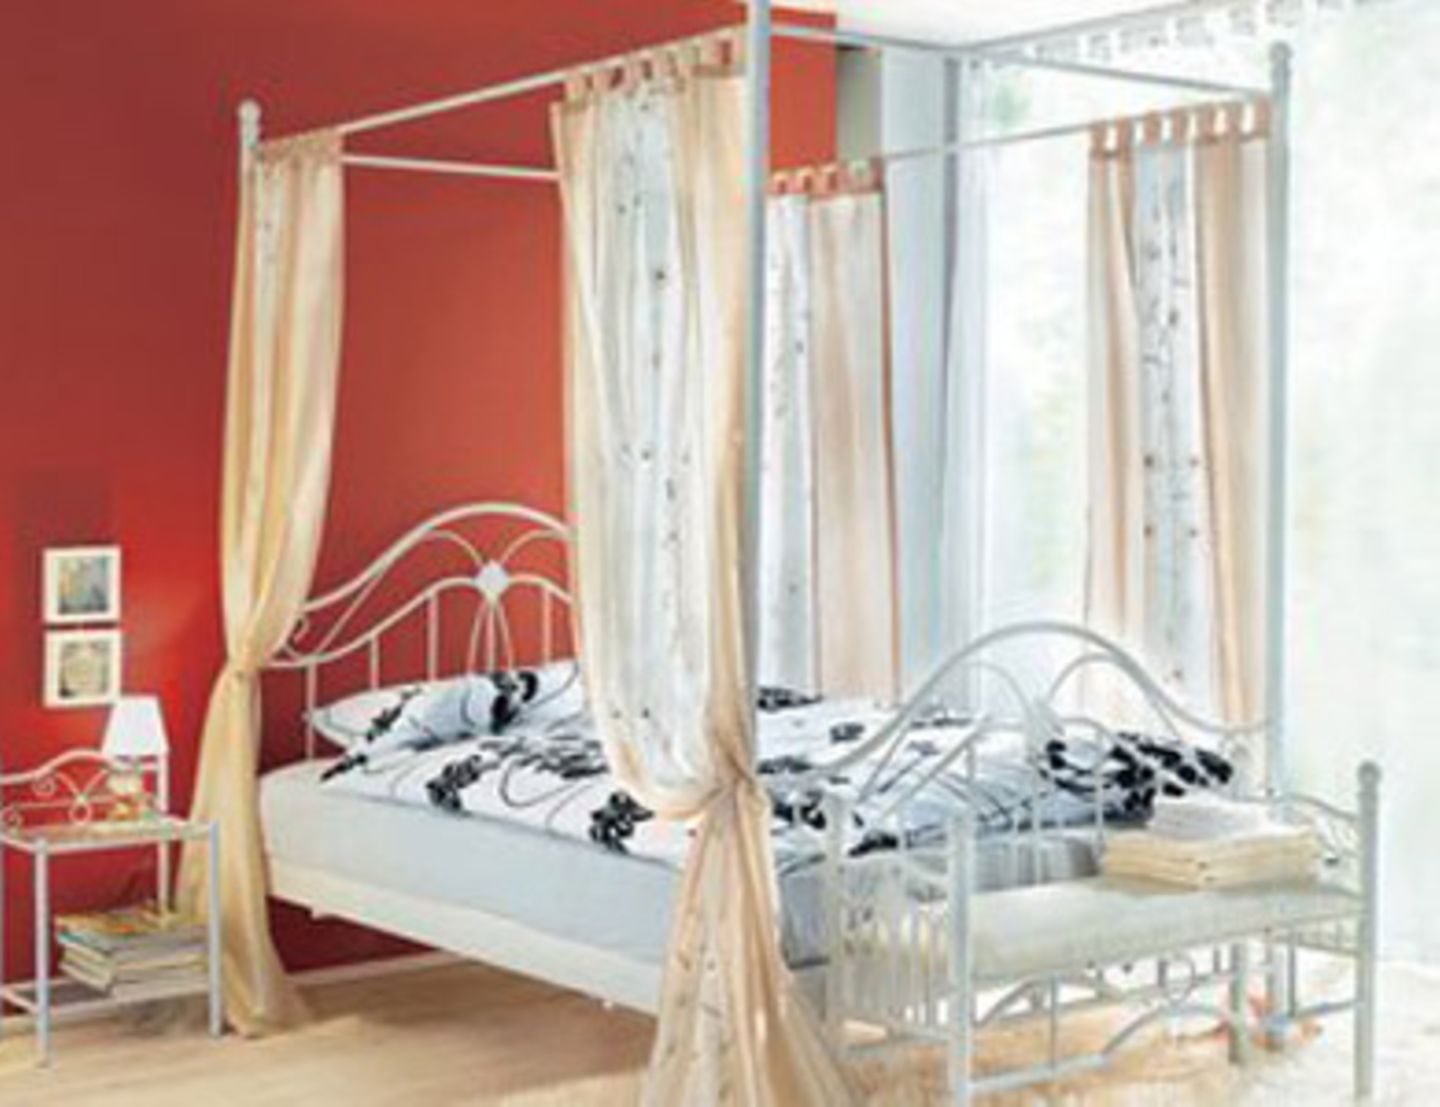 Schlafen wie im Himmel in diesem verträumten Bett, ca. 240 Euro über www.otto.de